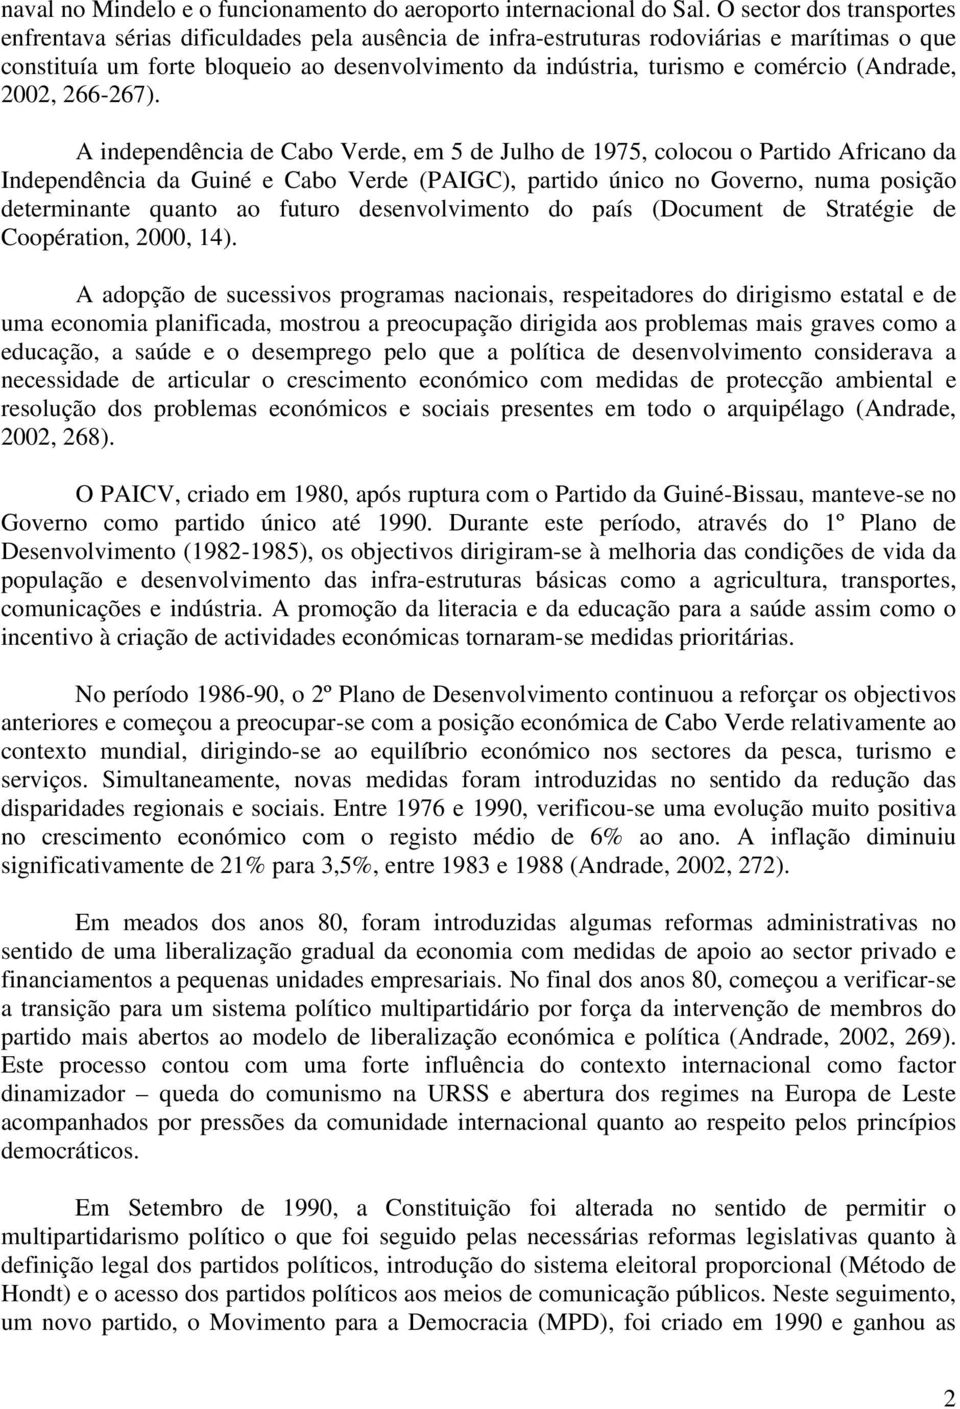 comércio (Andrade, 2002, 266-267).